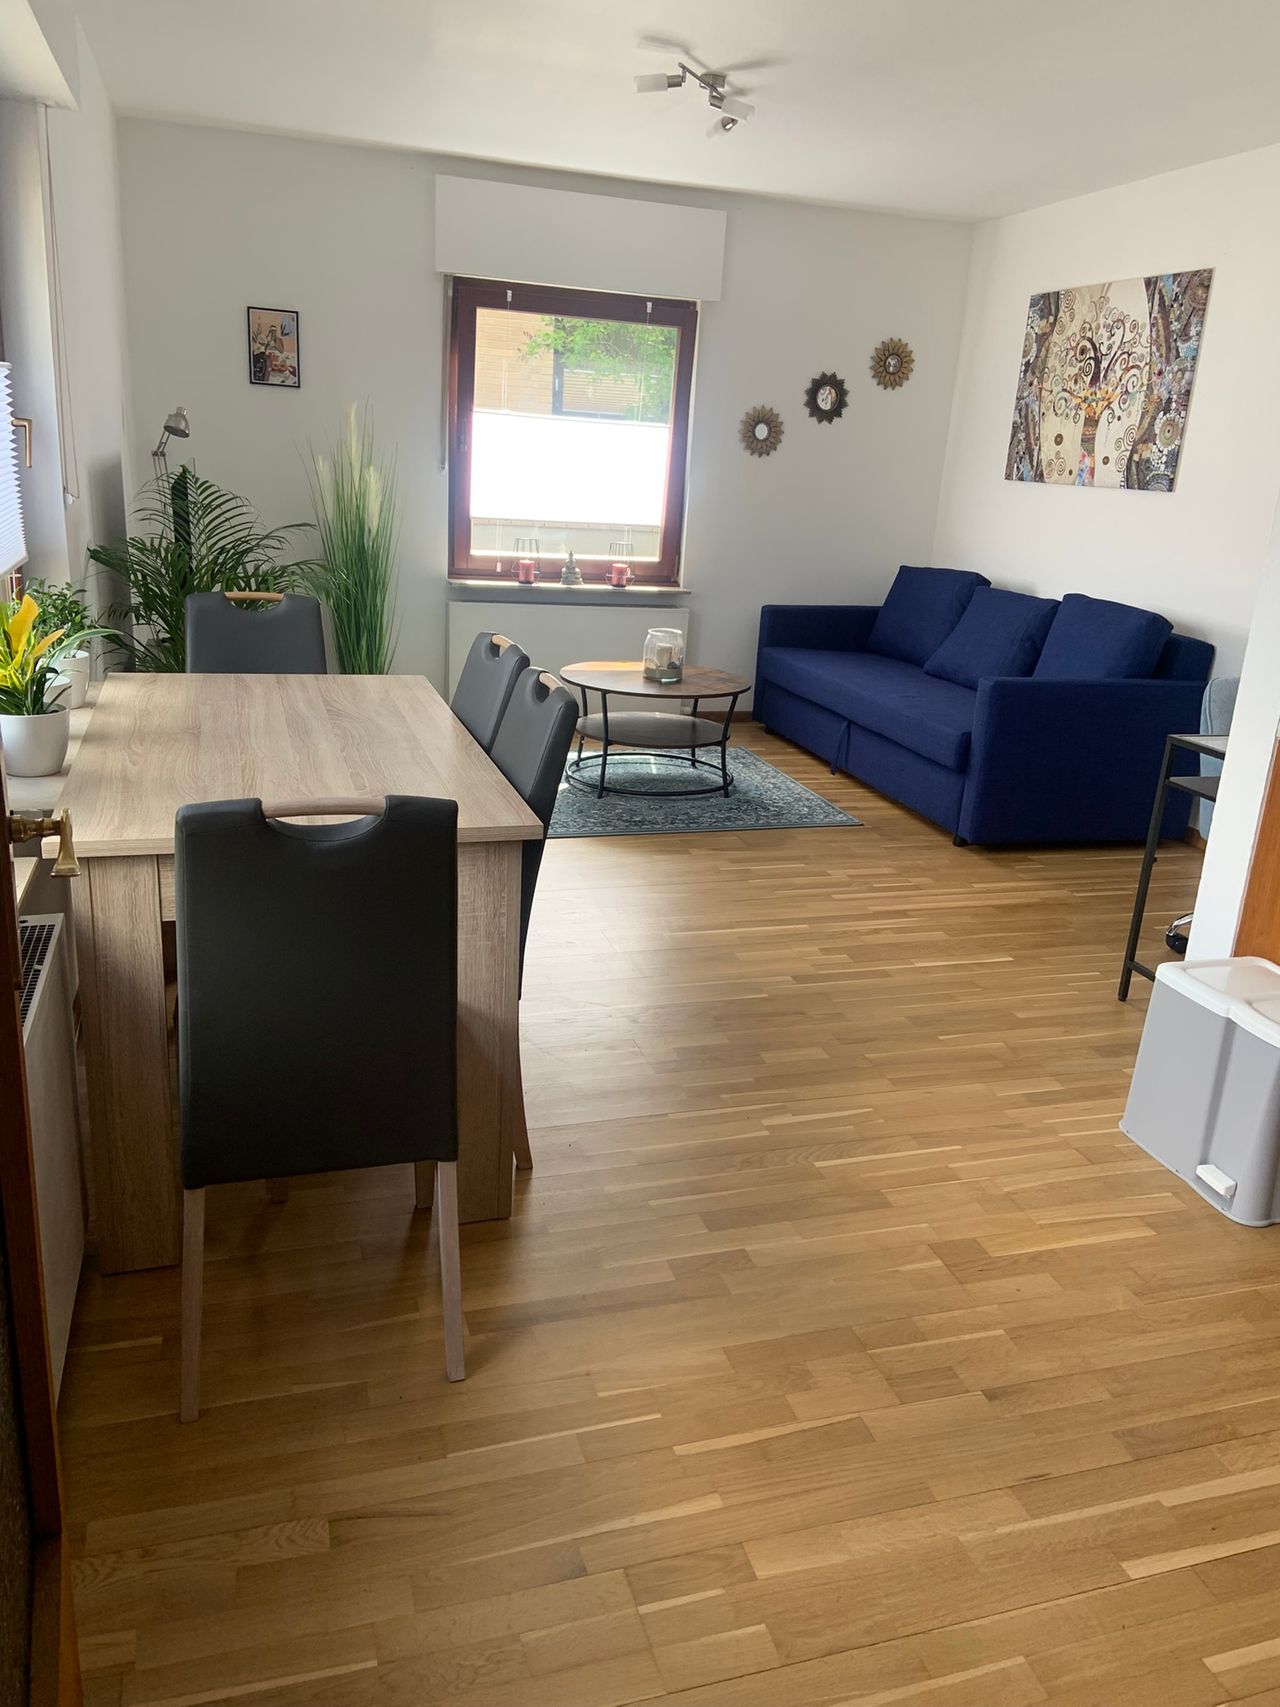 New, wonderful flat in Frohnau